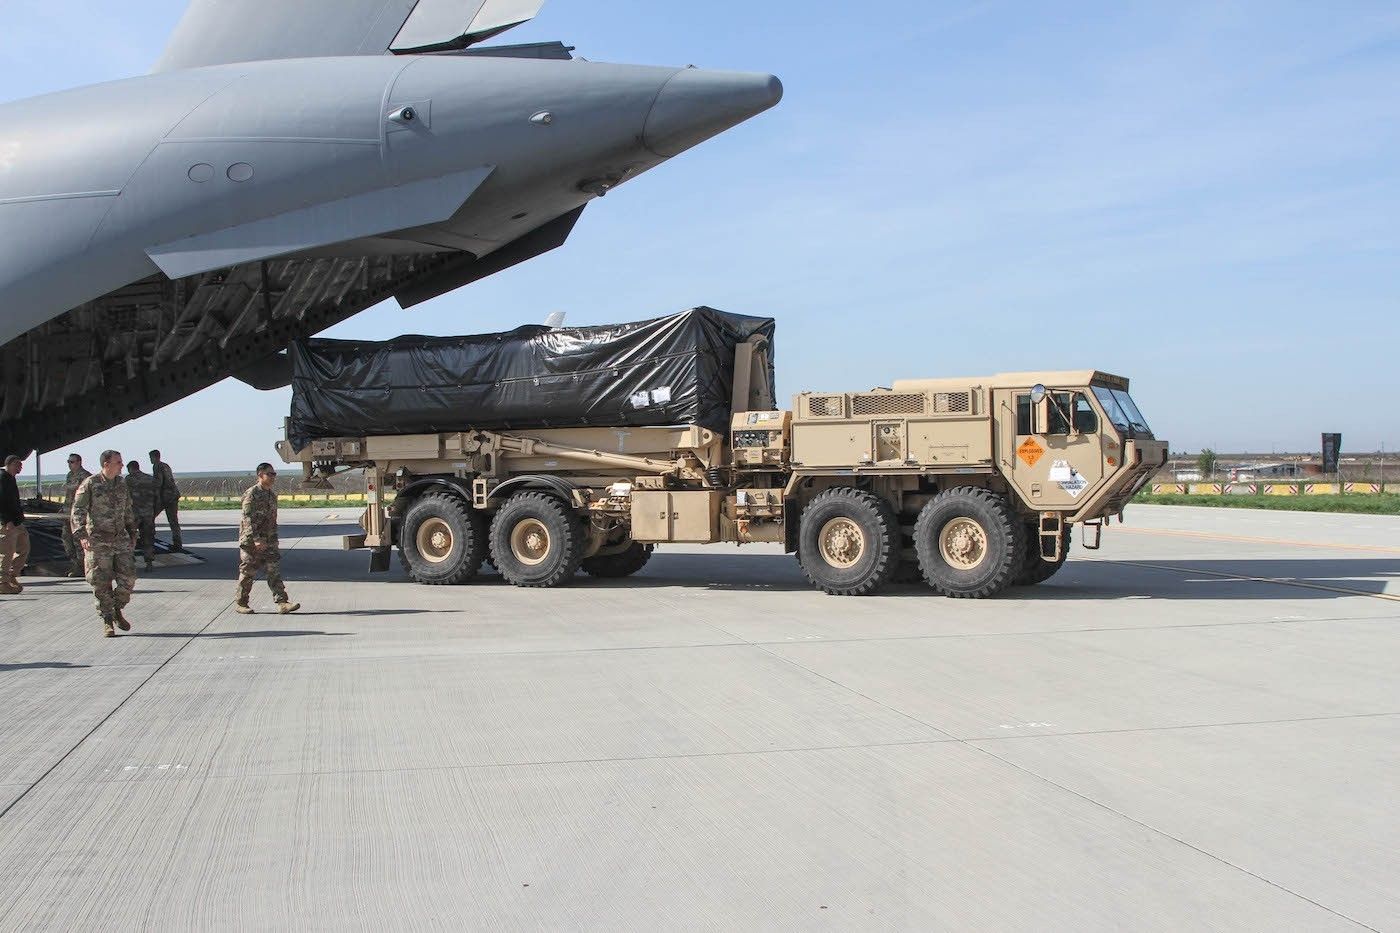 Wyrzutnia THAAD opuszcza pokład C-17 Globemaster III w bazie lotniczej Kogalnicenau. Fot. US Army